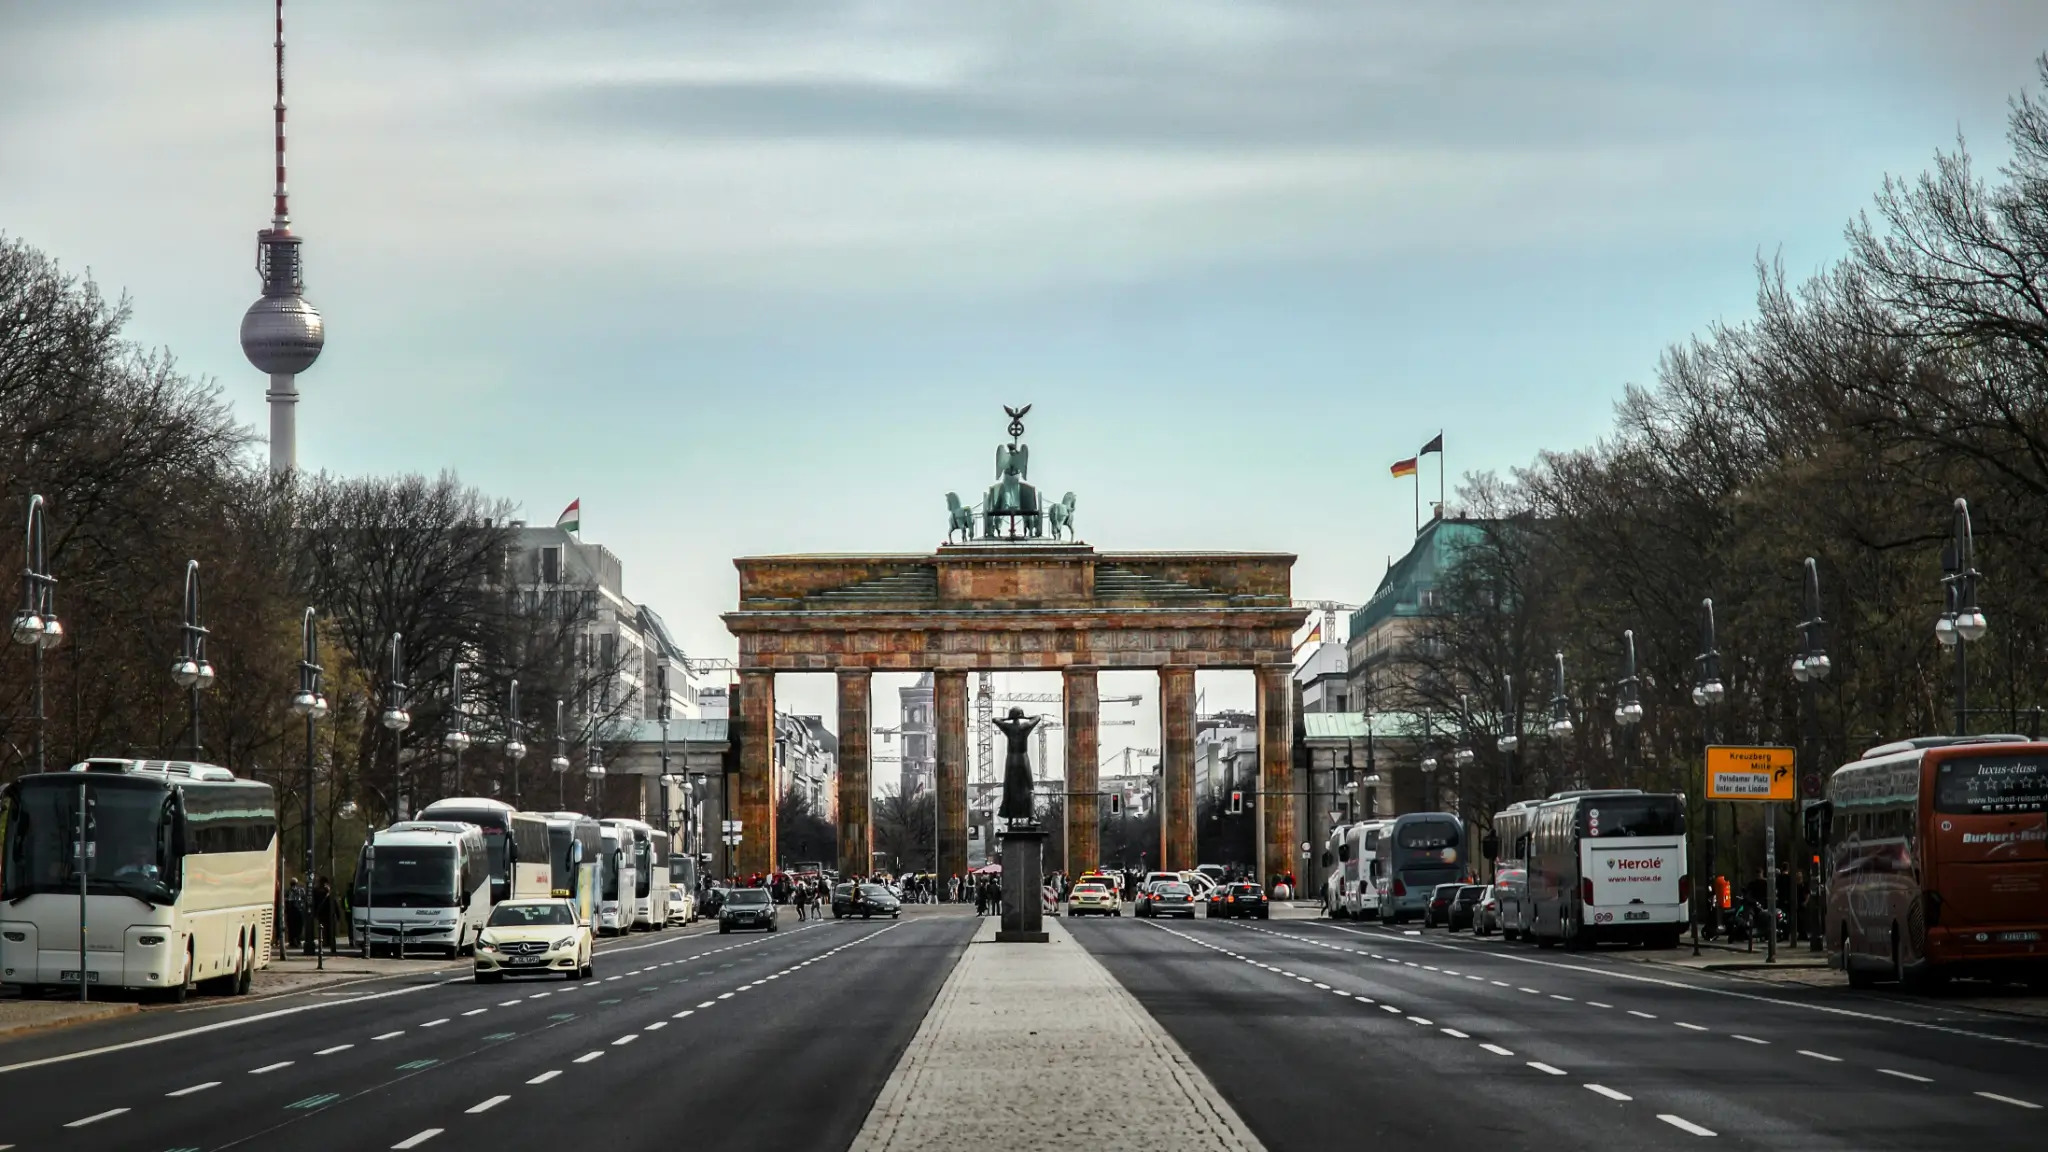 Ministro dos transportes alemão propõe fim de semana sem carros para reduzir CO2